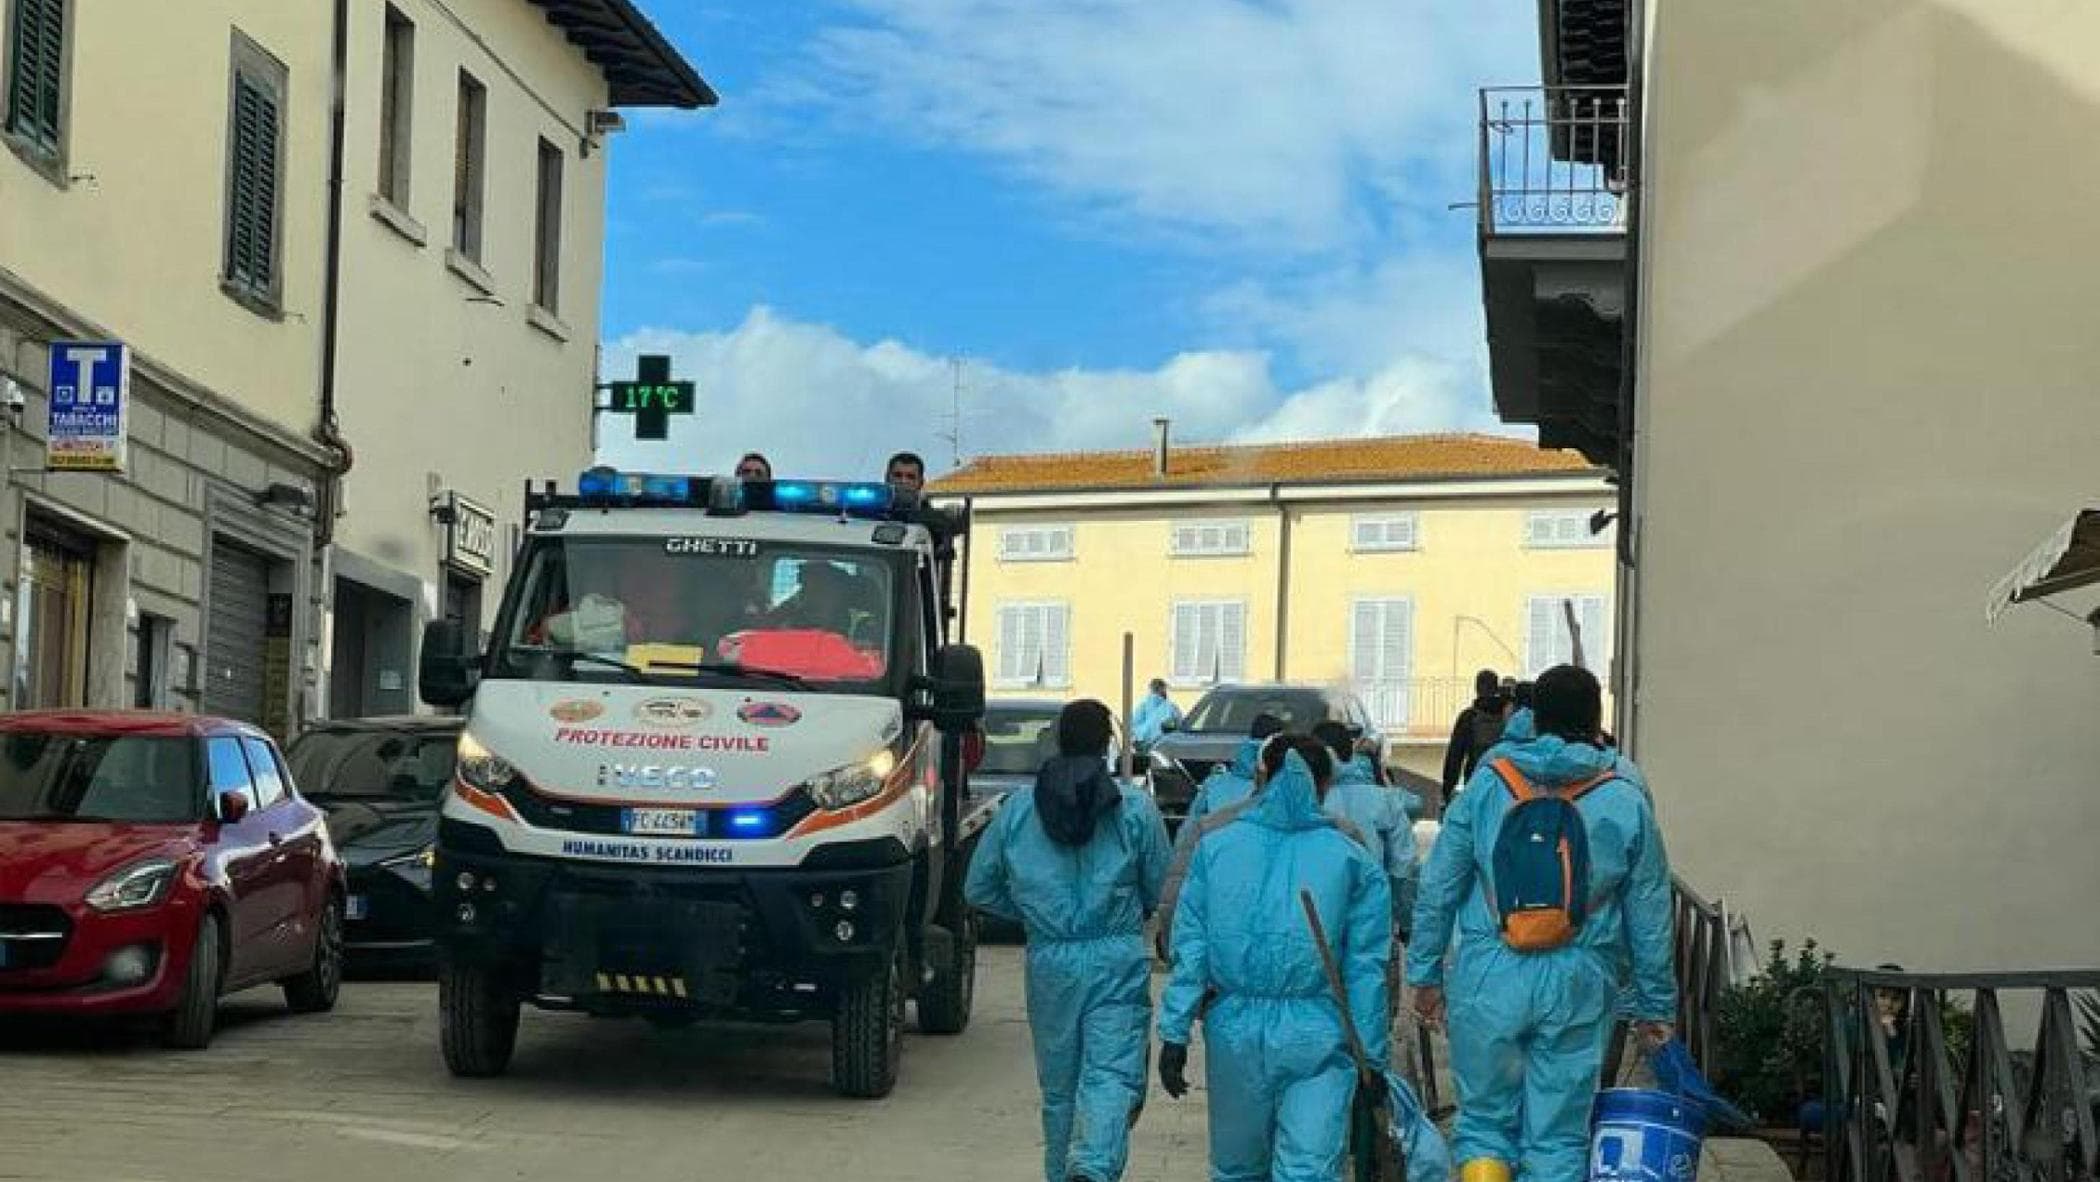 Protezione civile cinese a Prato, soccorsi ai connazionali in difficoltà.